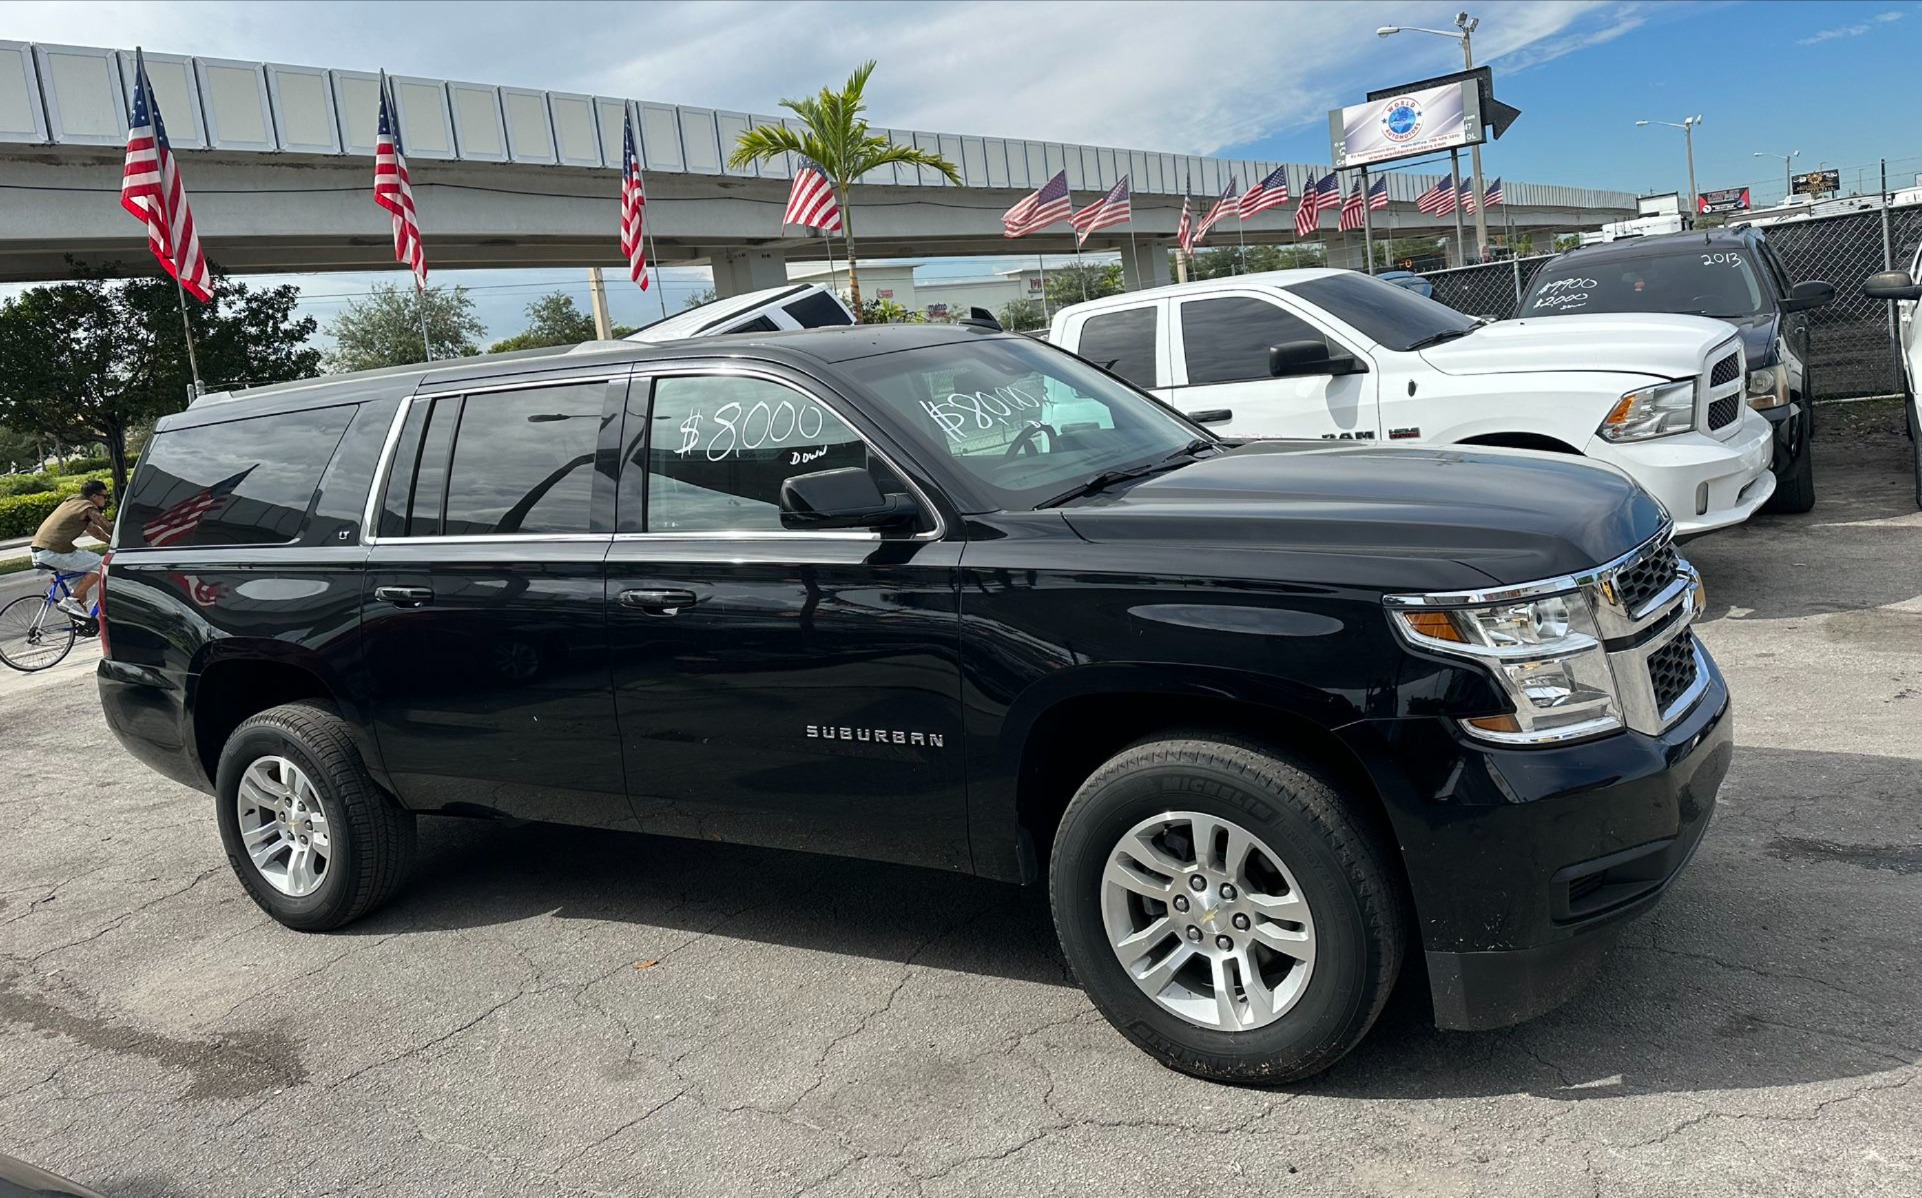 2018 Chevy Suburban Black for sale in Miami, FL